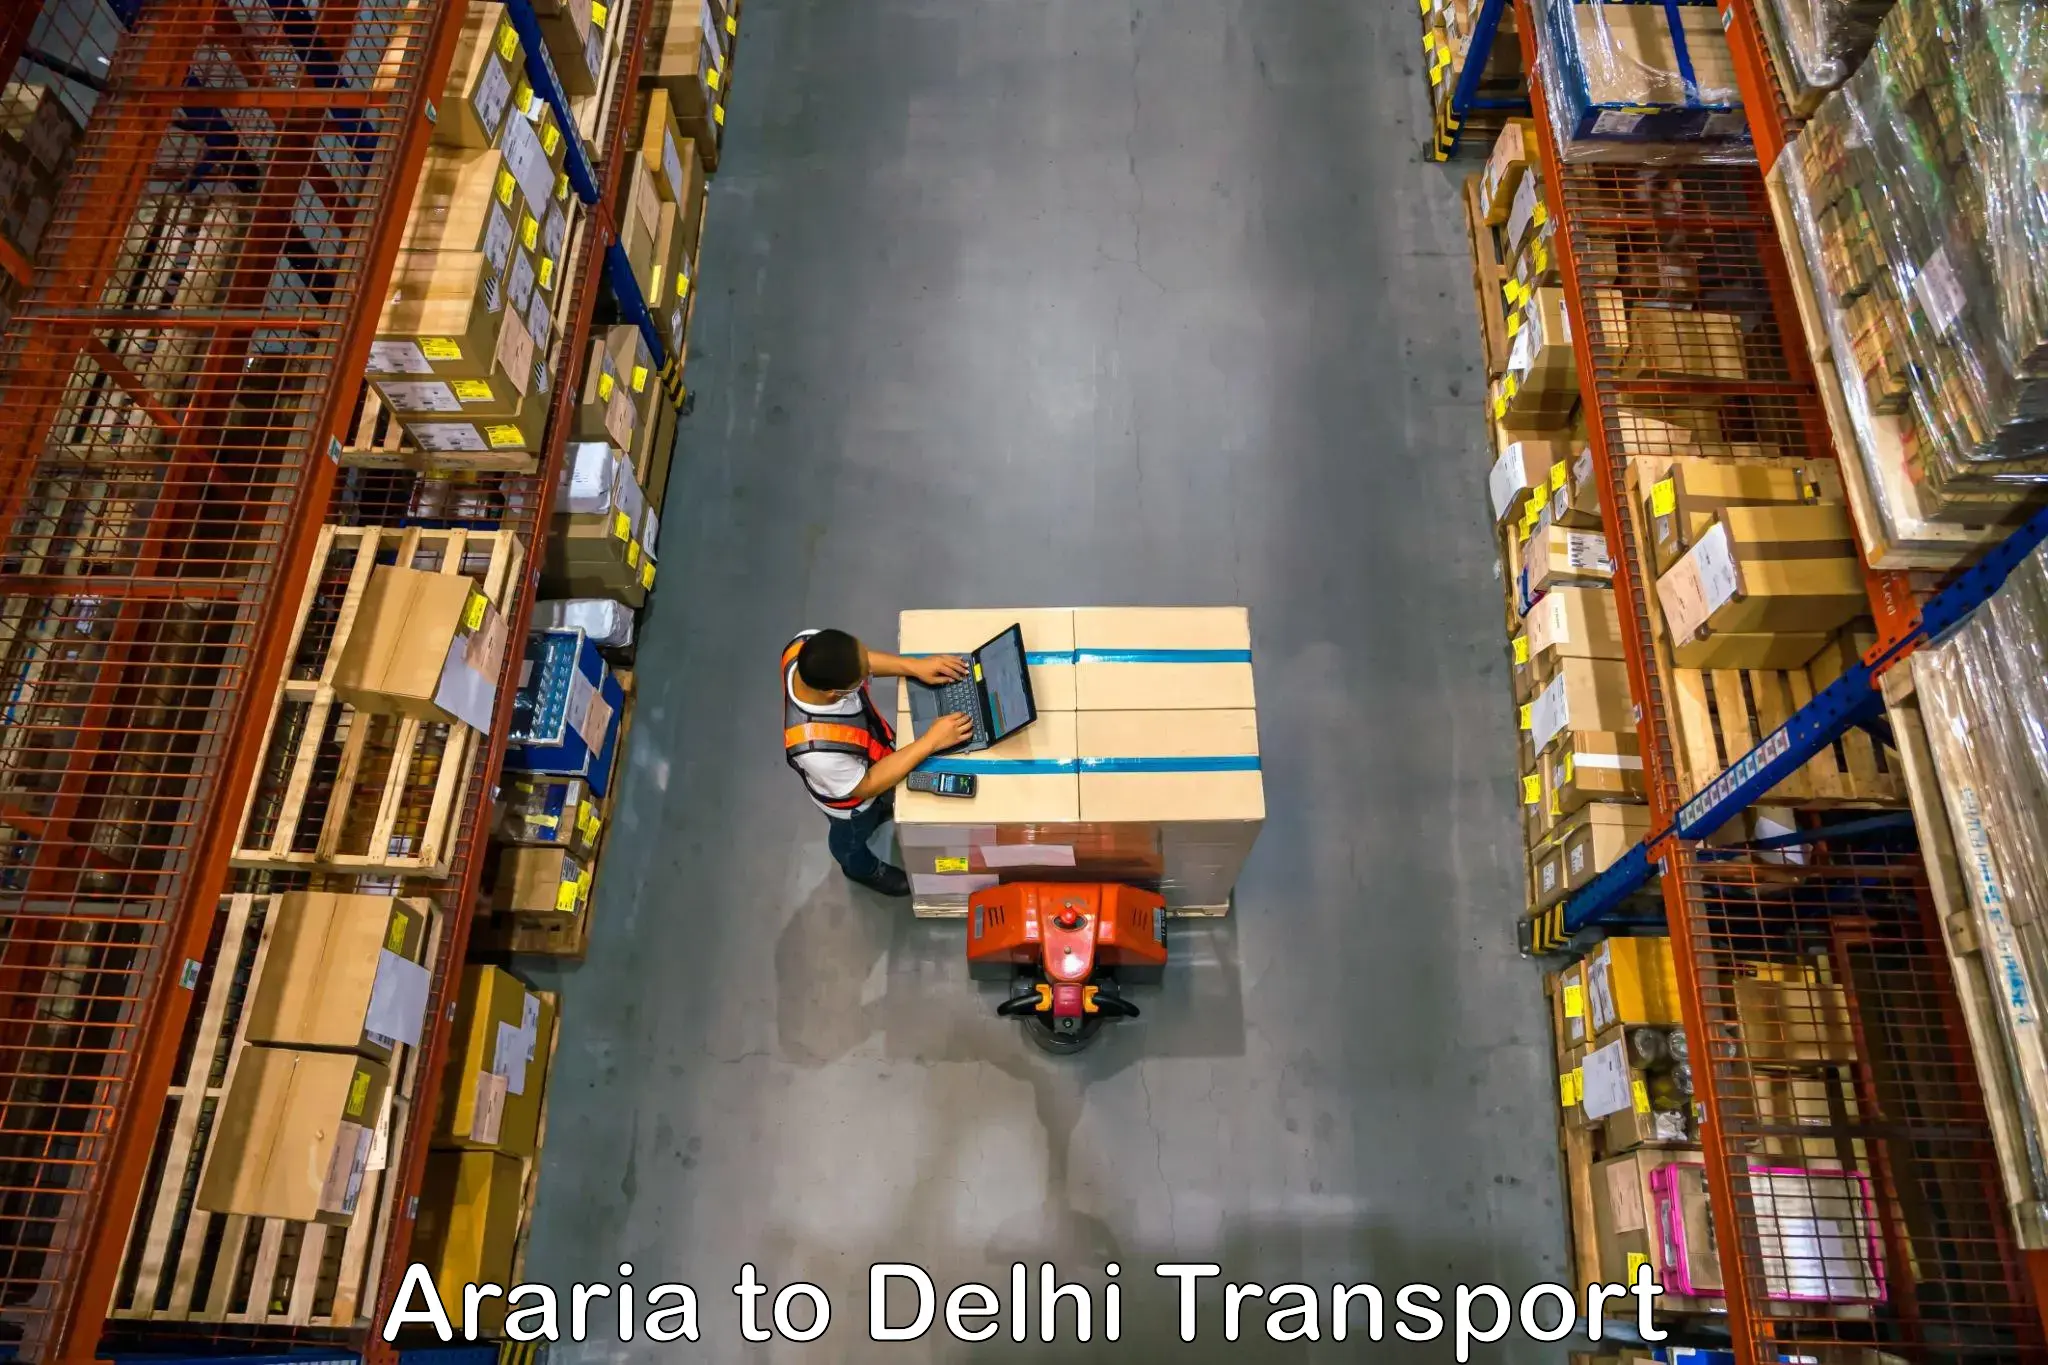 Domestic transport services Araria to IIT Delhi